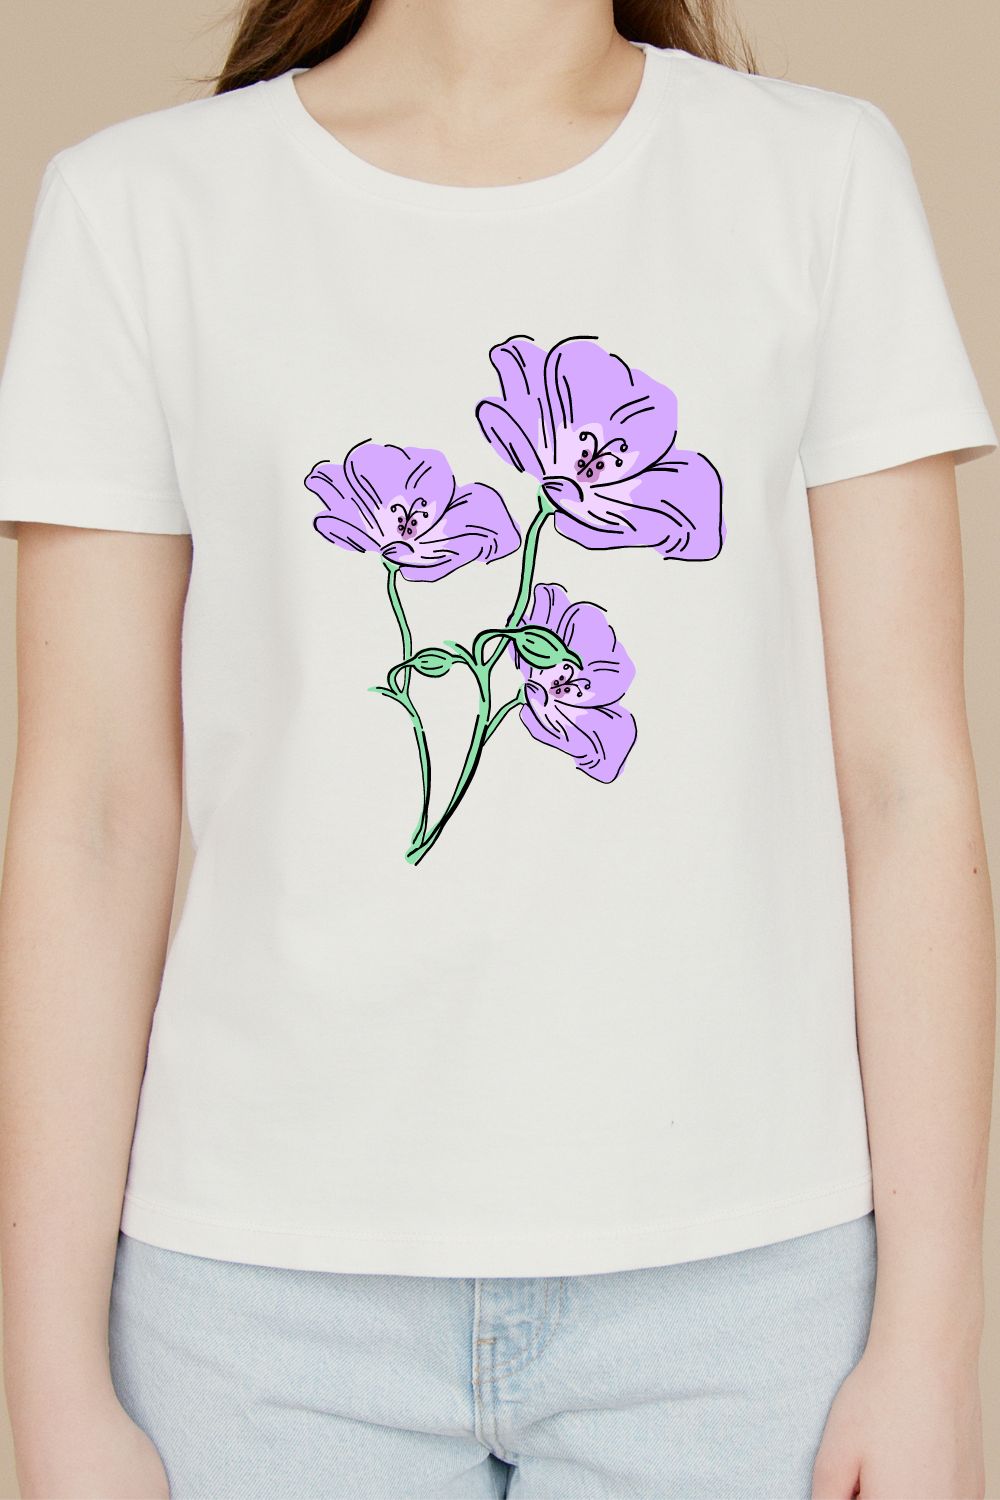 Purple flowers design t-shirt pinterest preview image.